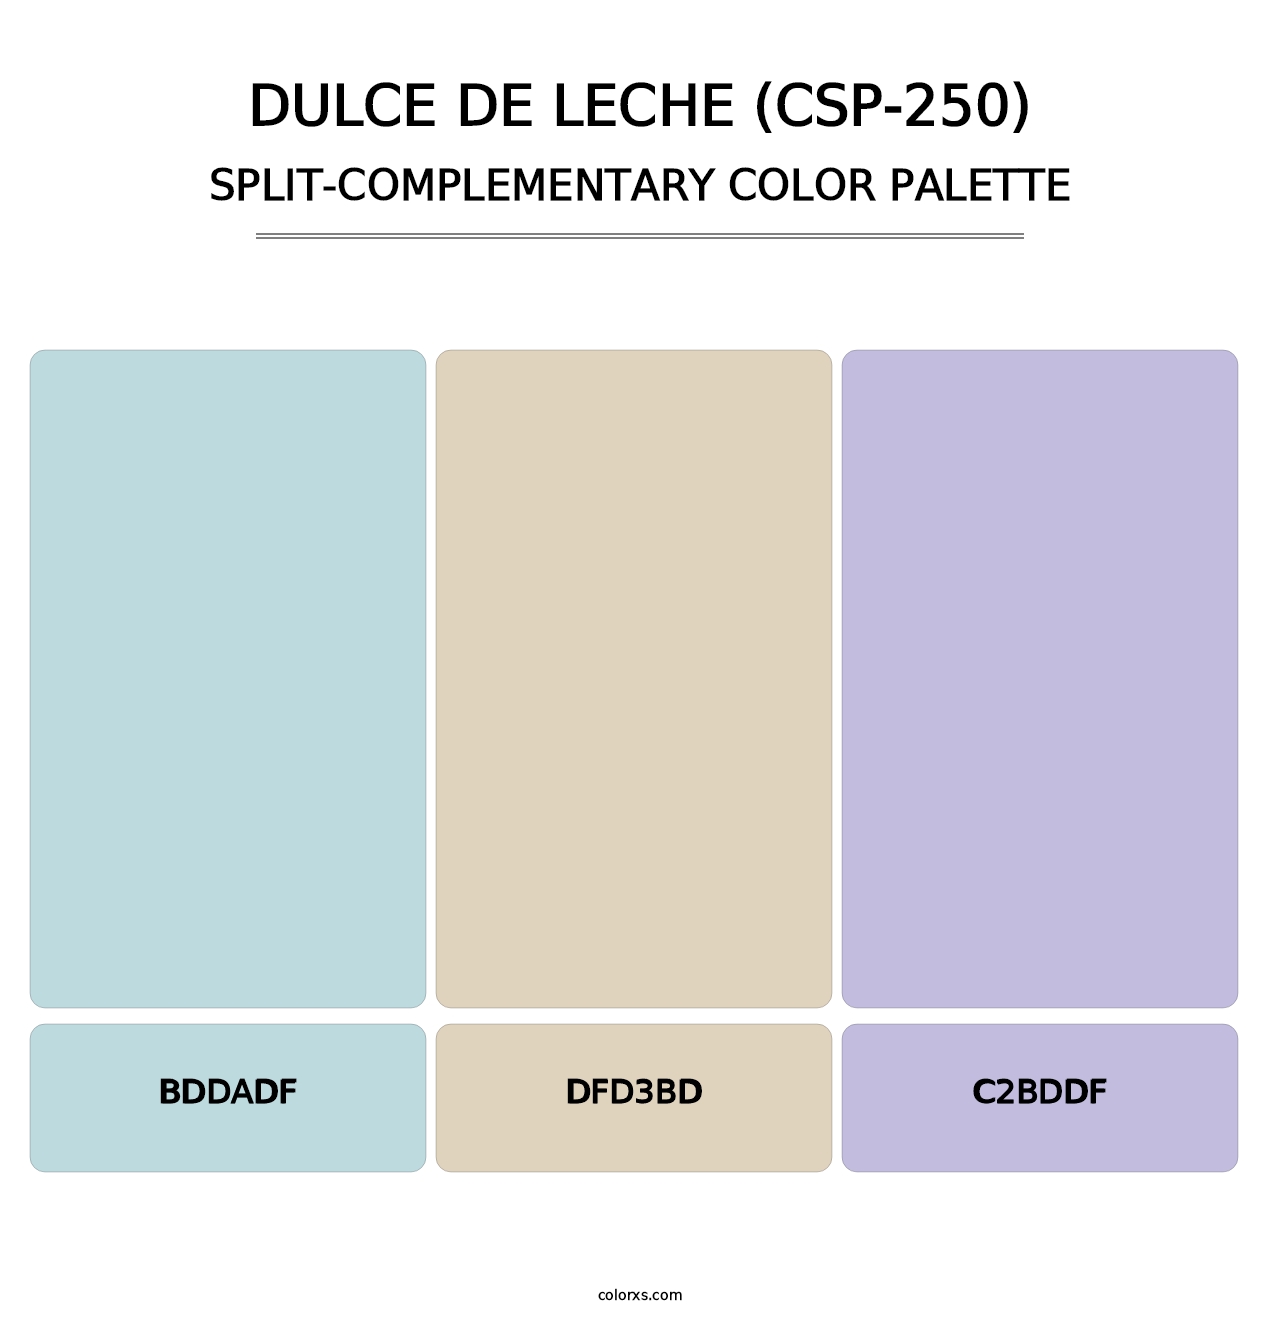 Dulce de Leche (CSP-250) - Split-Complementary Color Palette